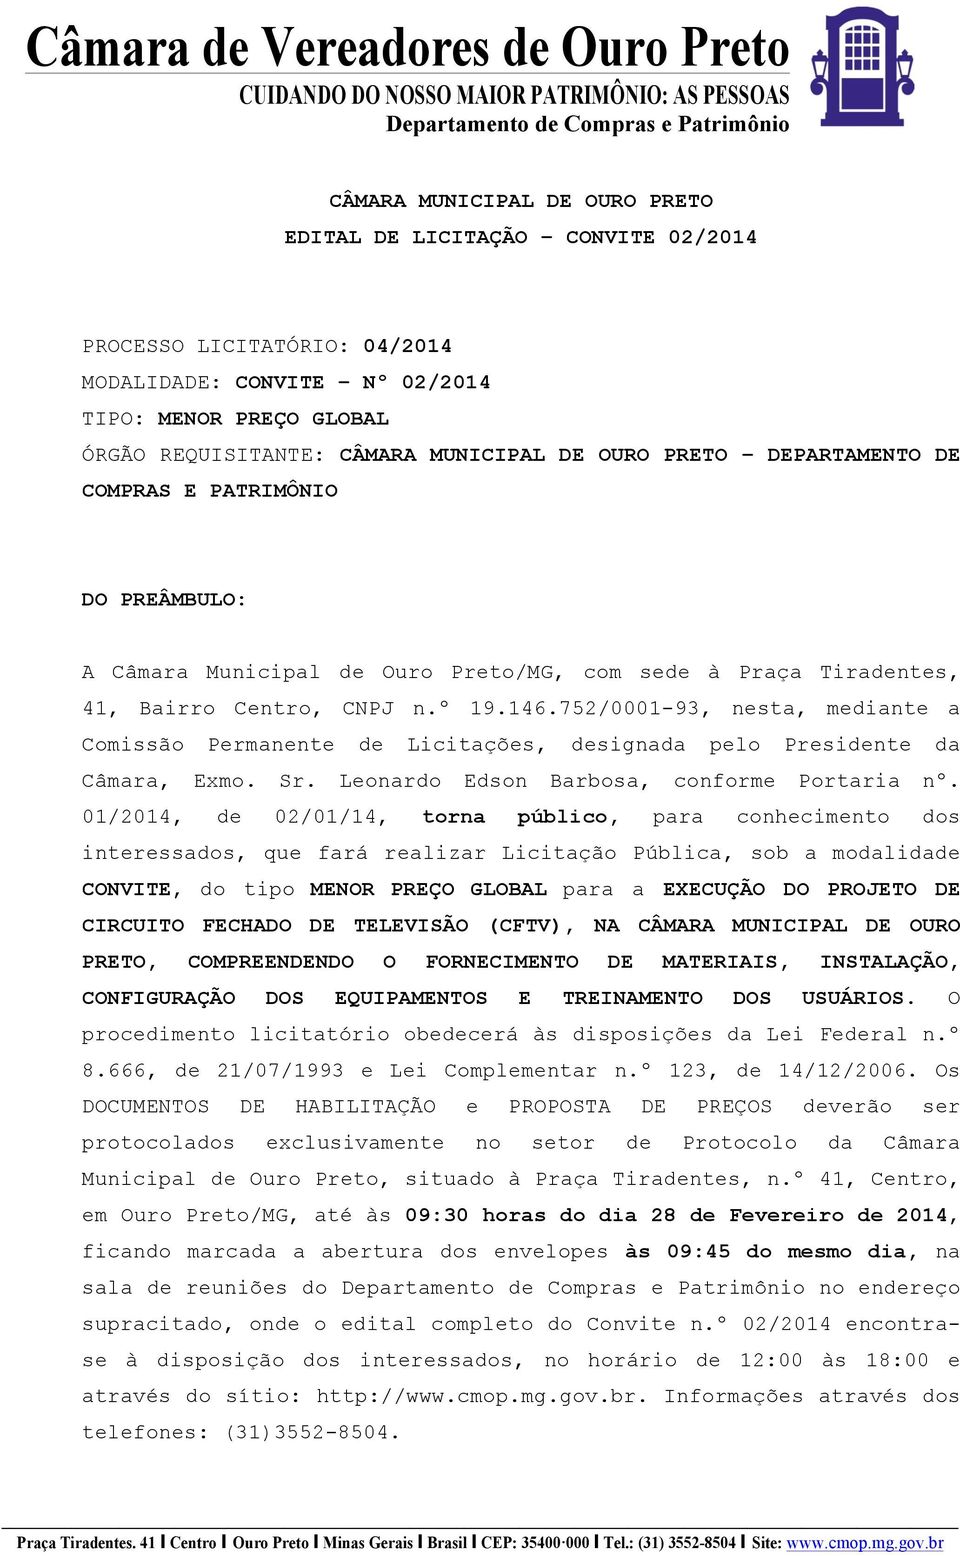 752/0001-93, nesta, mediante a Comissão Permanente de Licitações, designada pelo Presidente da Câmara, Exmo. Sr. Leonardo Edson Barbosa, conforme Portaria nº.